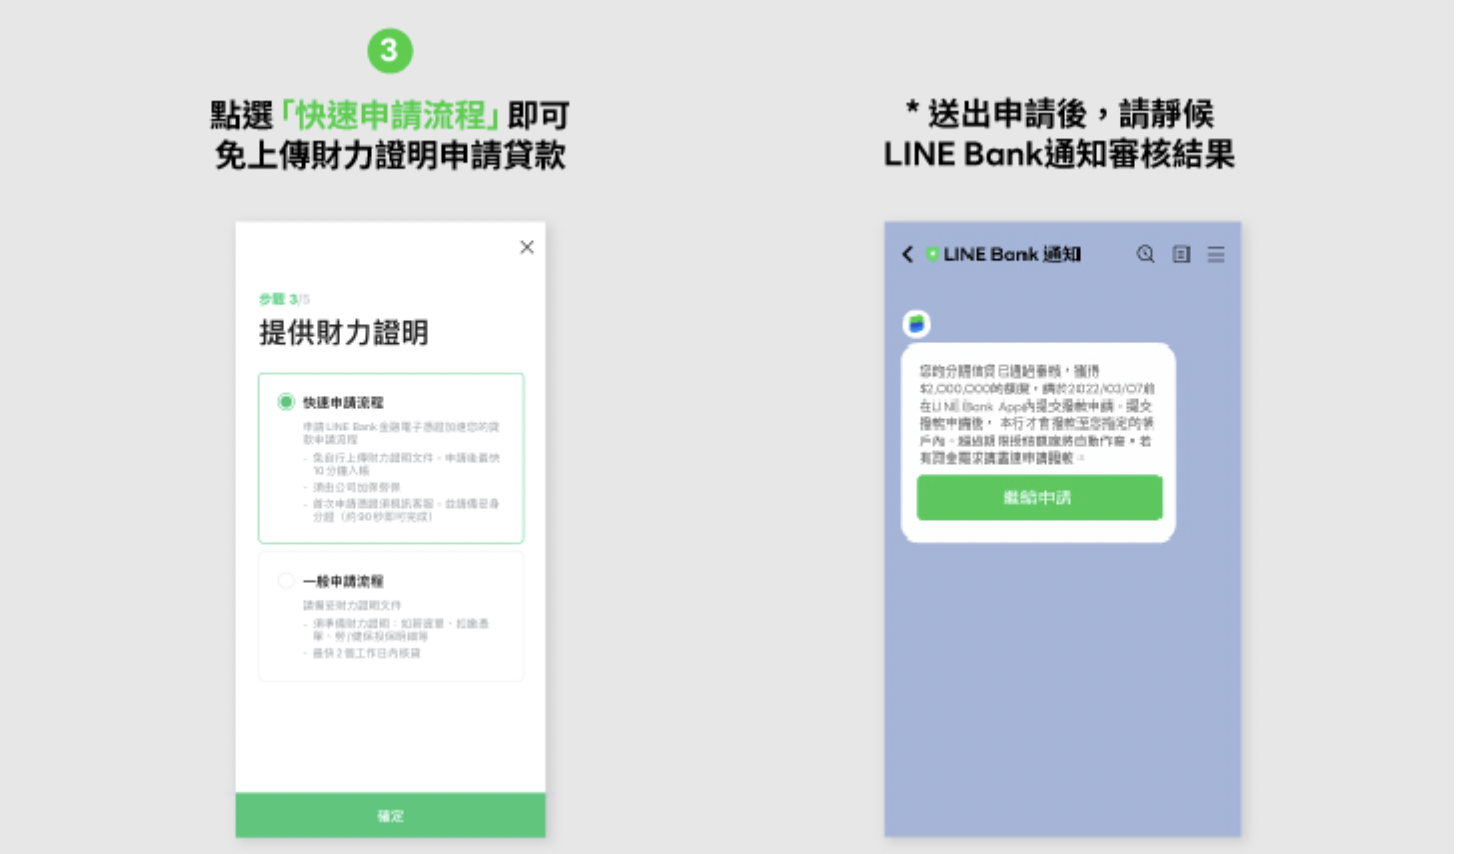 line bank信貸申請流程02